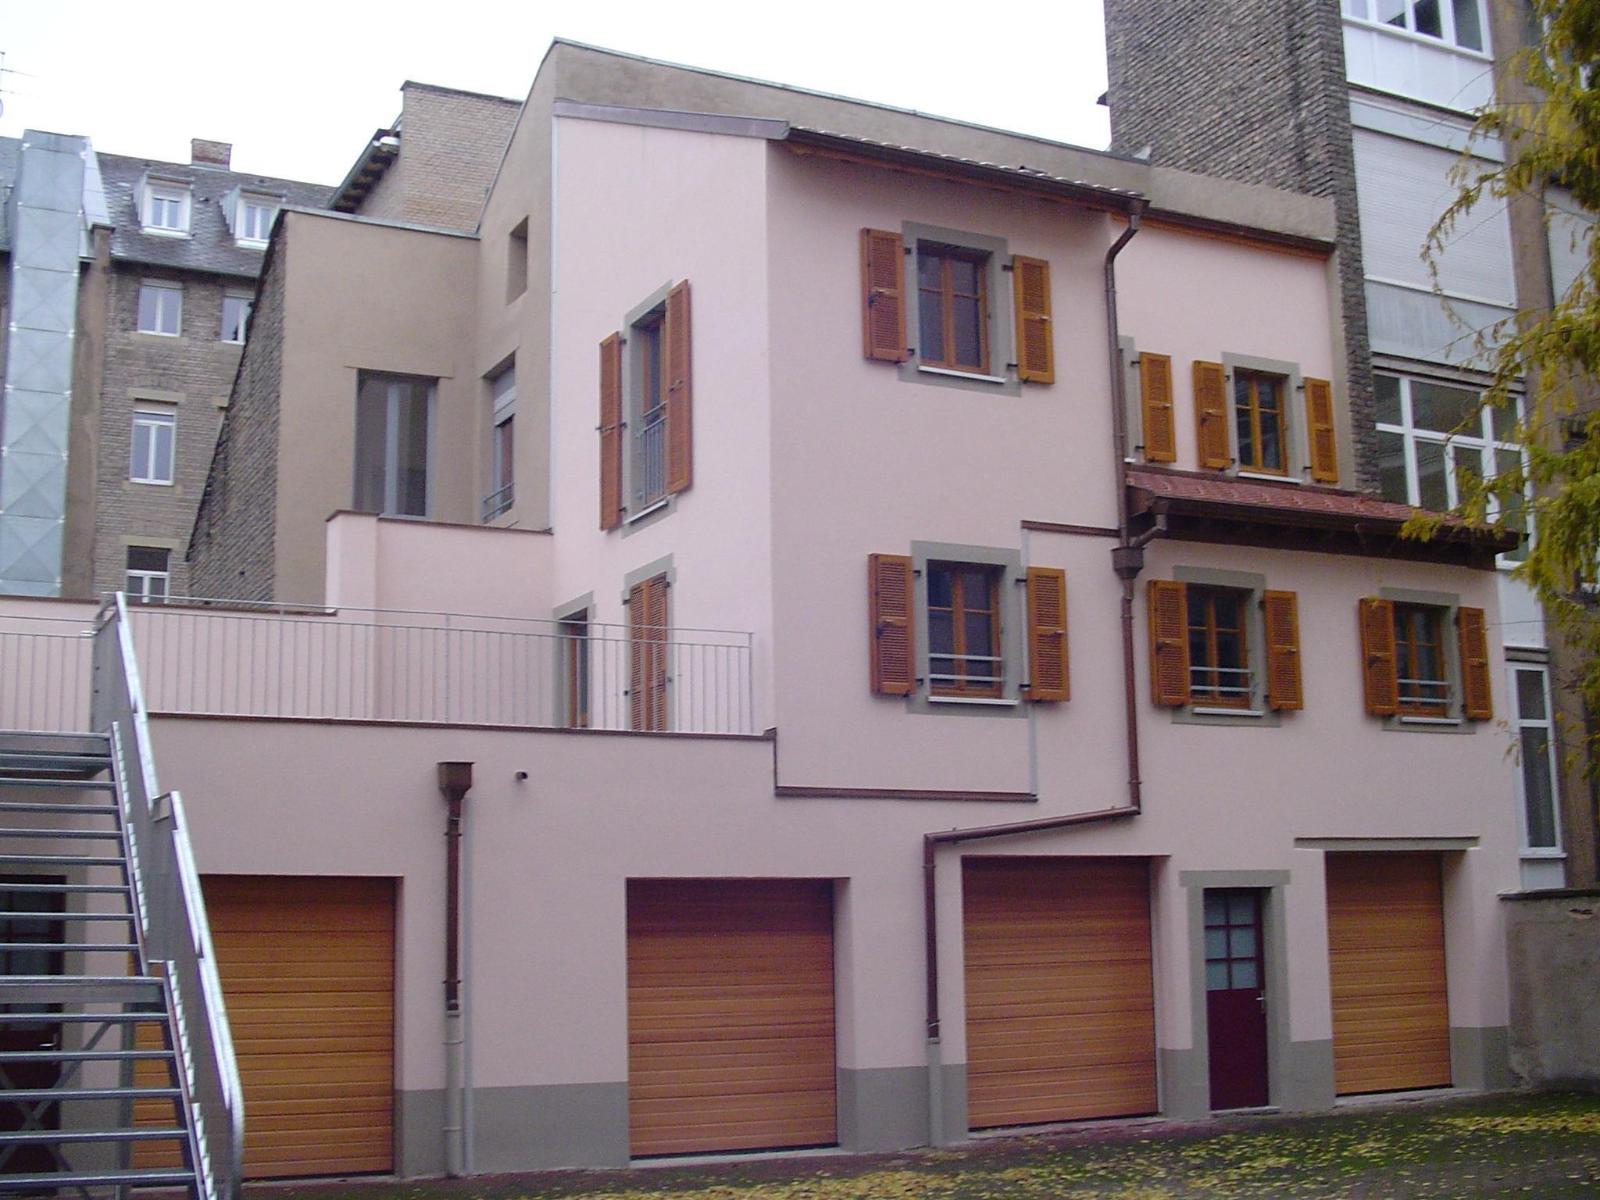 Construction : 2 appartements sur garages existants, ossature bois